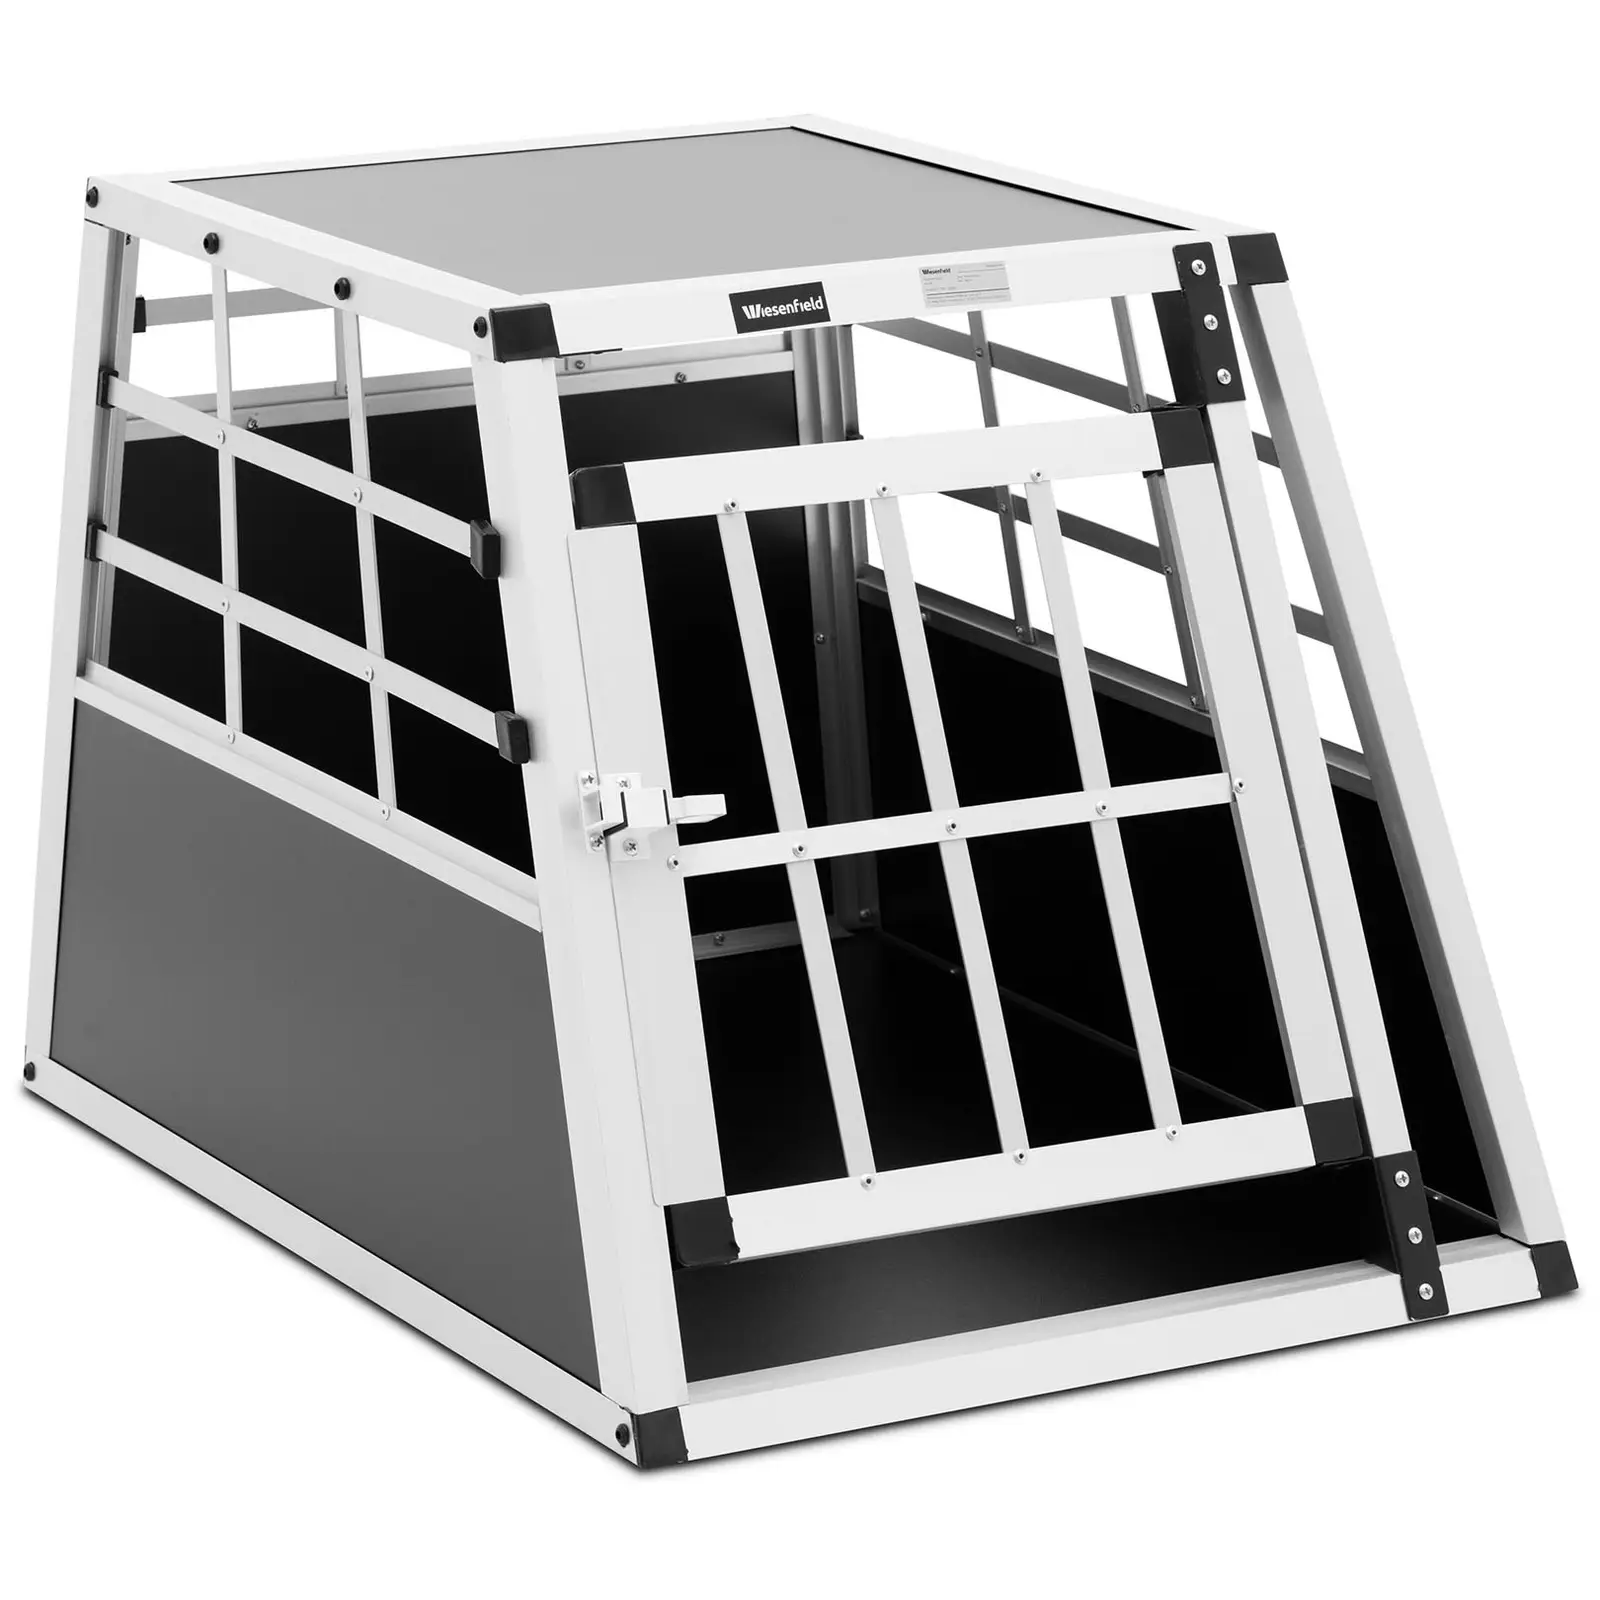 Prepravný box pre psa - hliník - lichobežníkový tvar - 55 x 70 x 50 cm